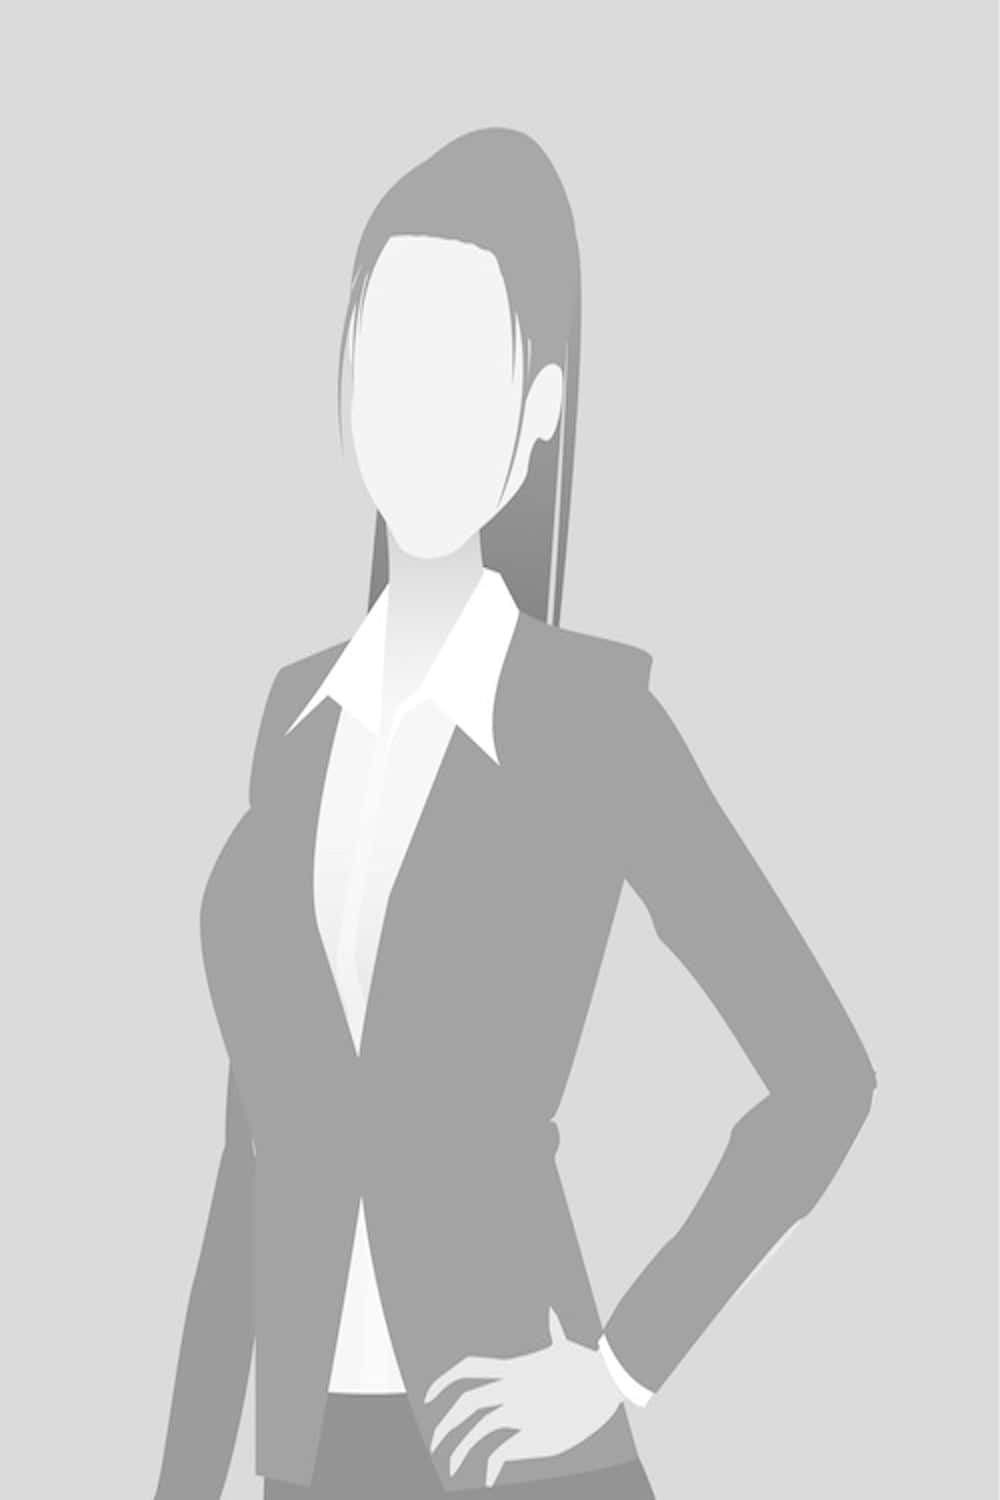 Default placeholder businesswoman half-length portrait photo avatar. Woman gray color